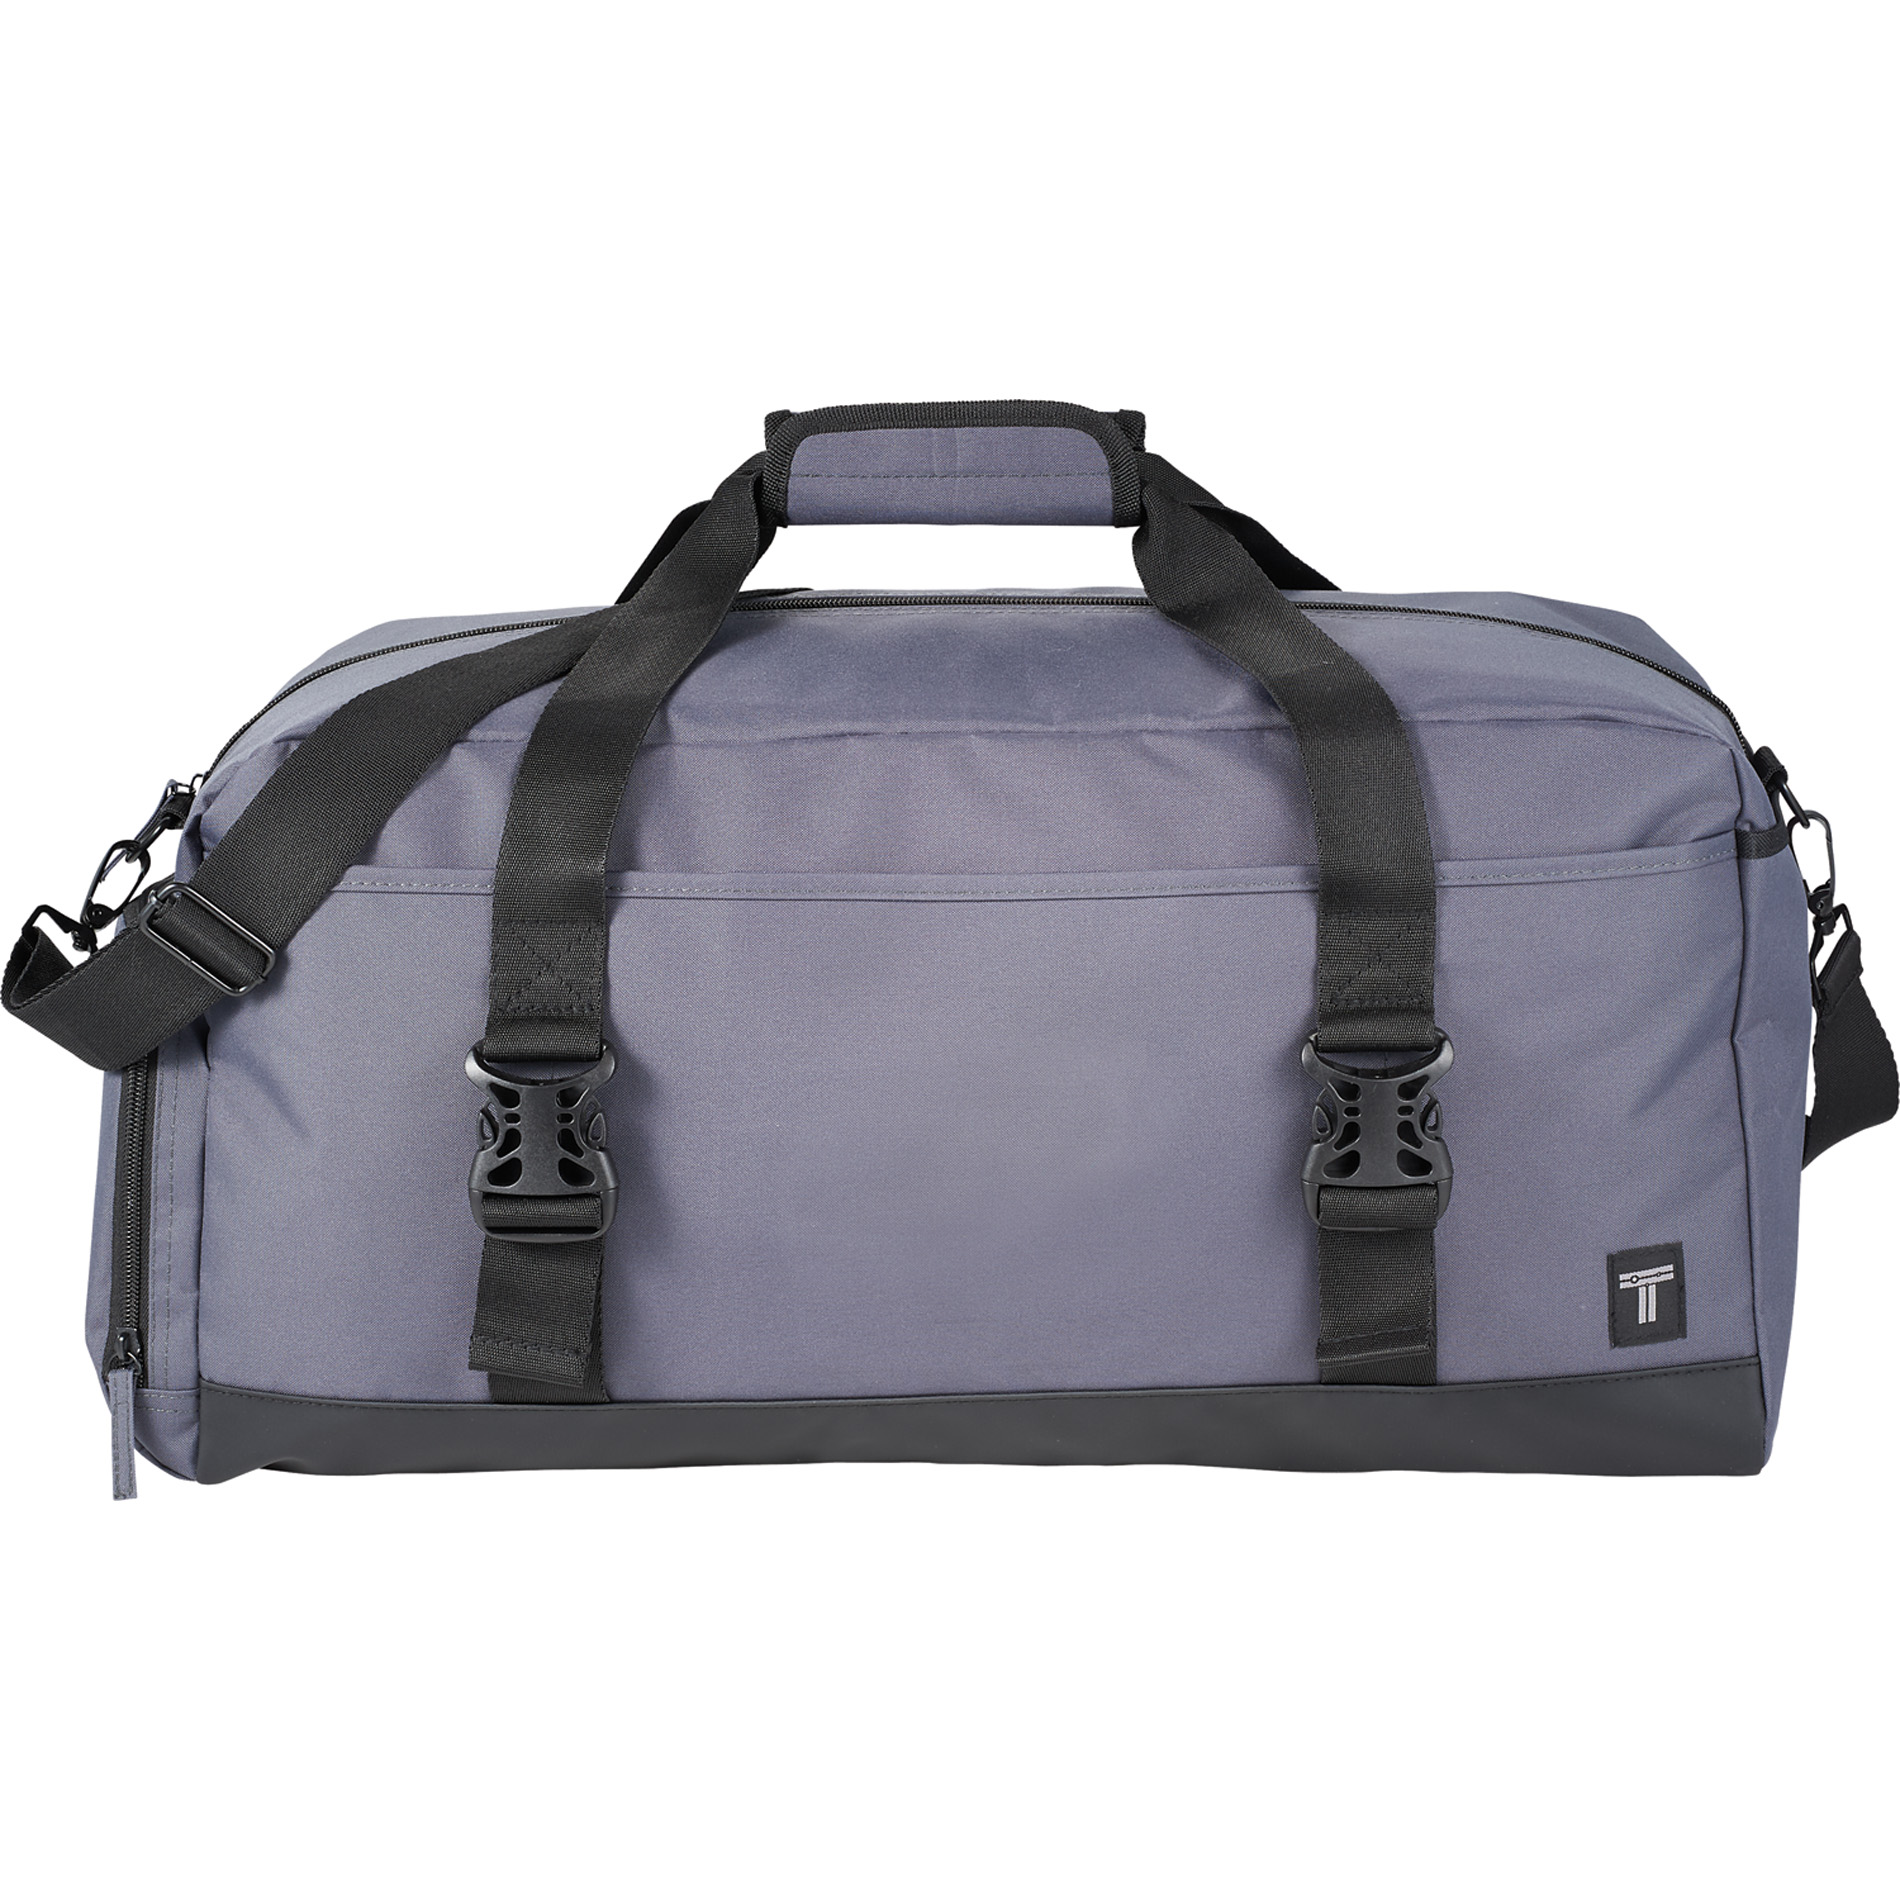 Tranzip 2020-16 - 21" Weekender Duffel Bag